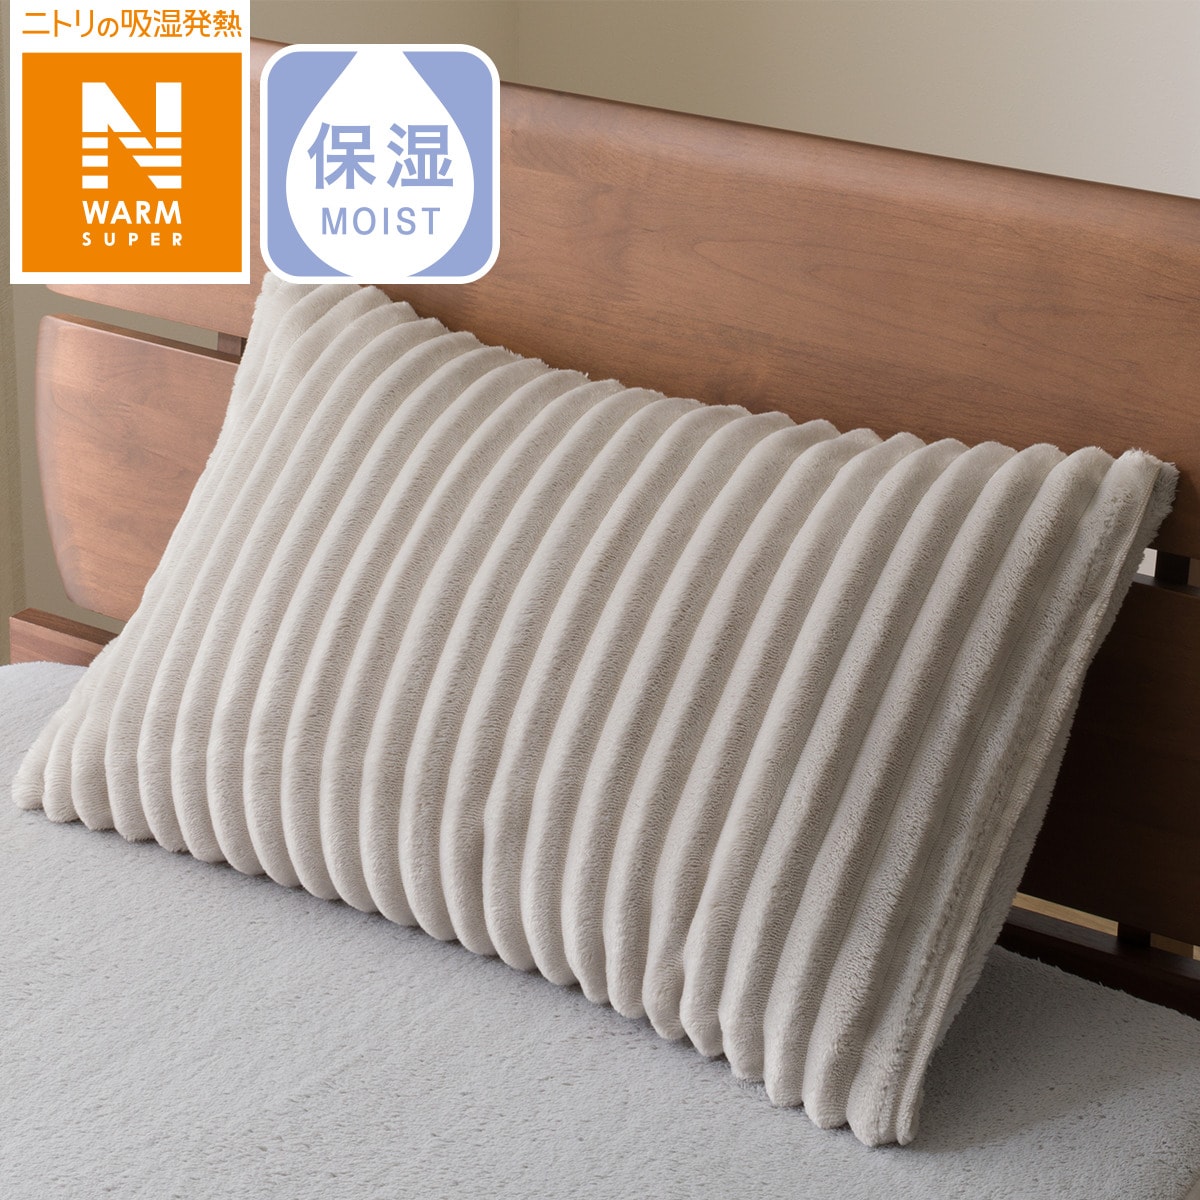 ニトリの枕カバー (NウォームSP ストライプ23A23)   【1年保証】(布団・寝具)